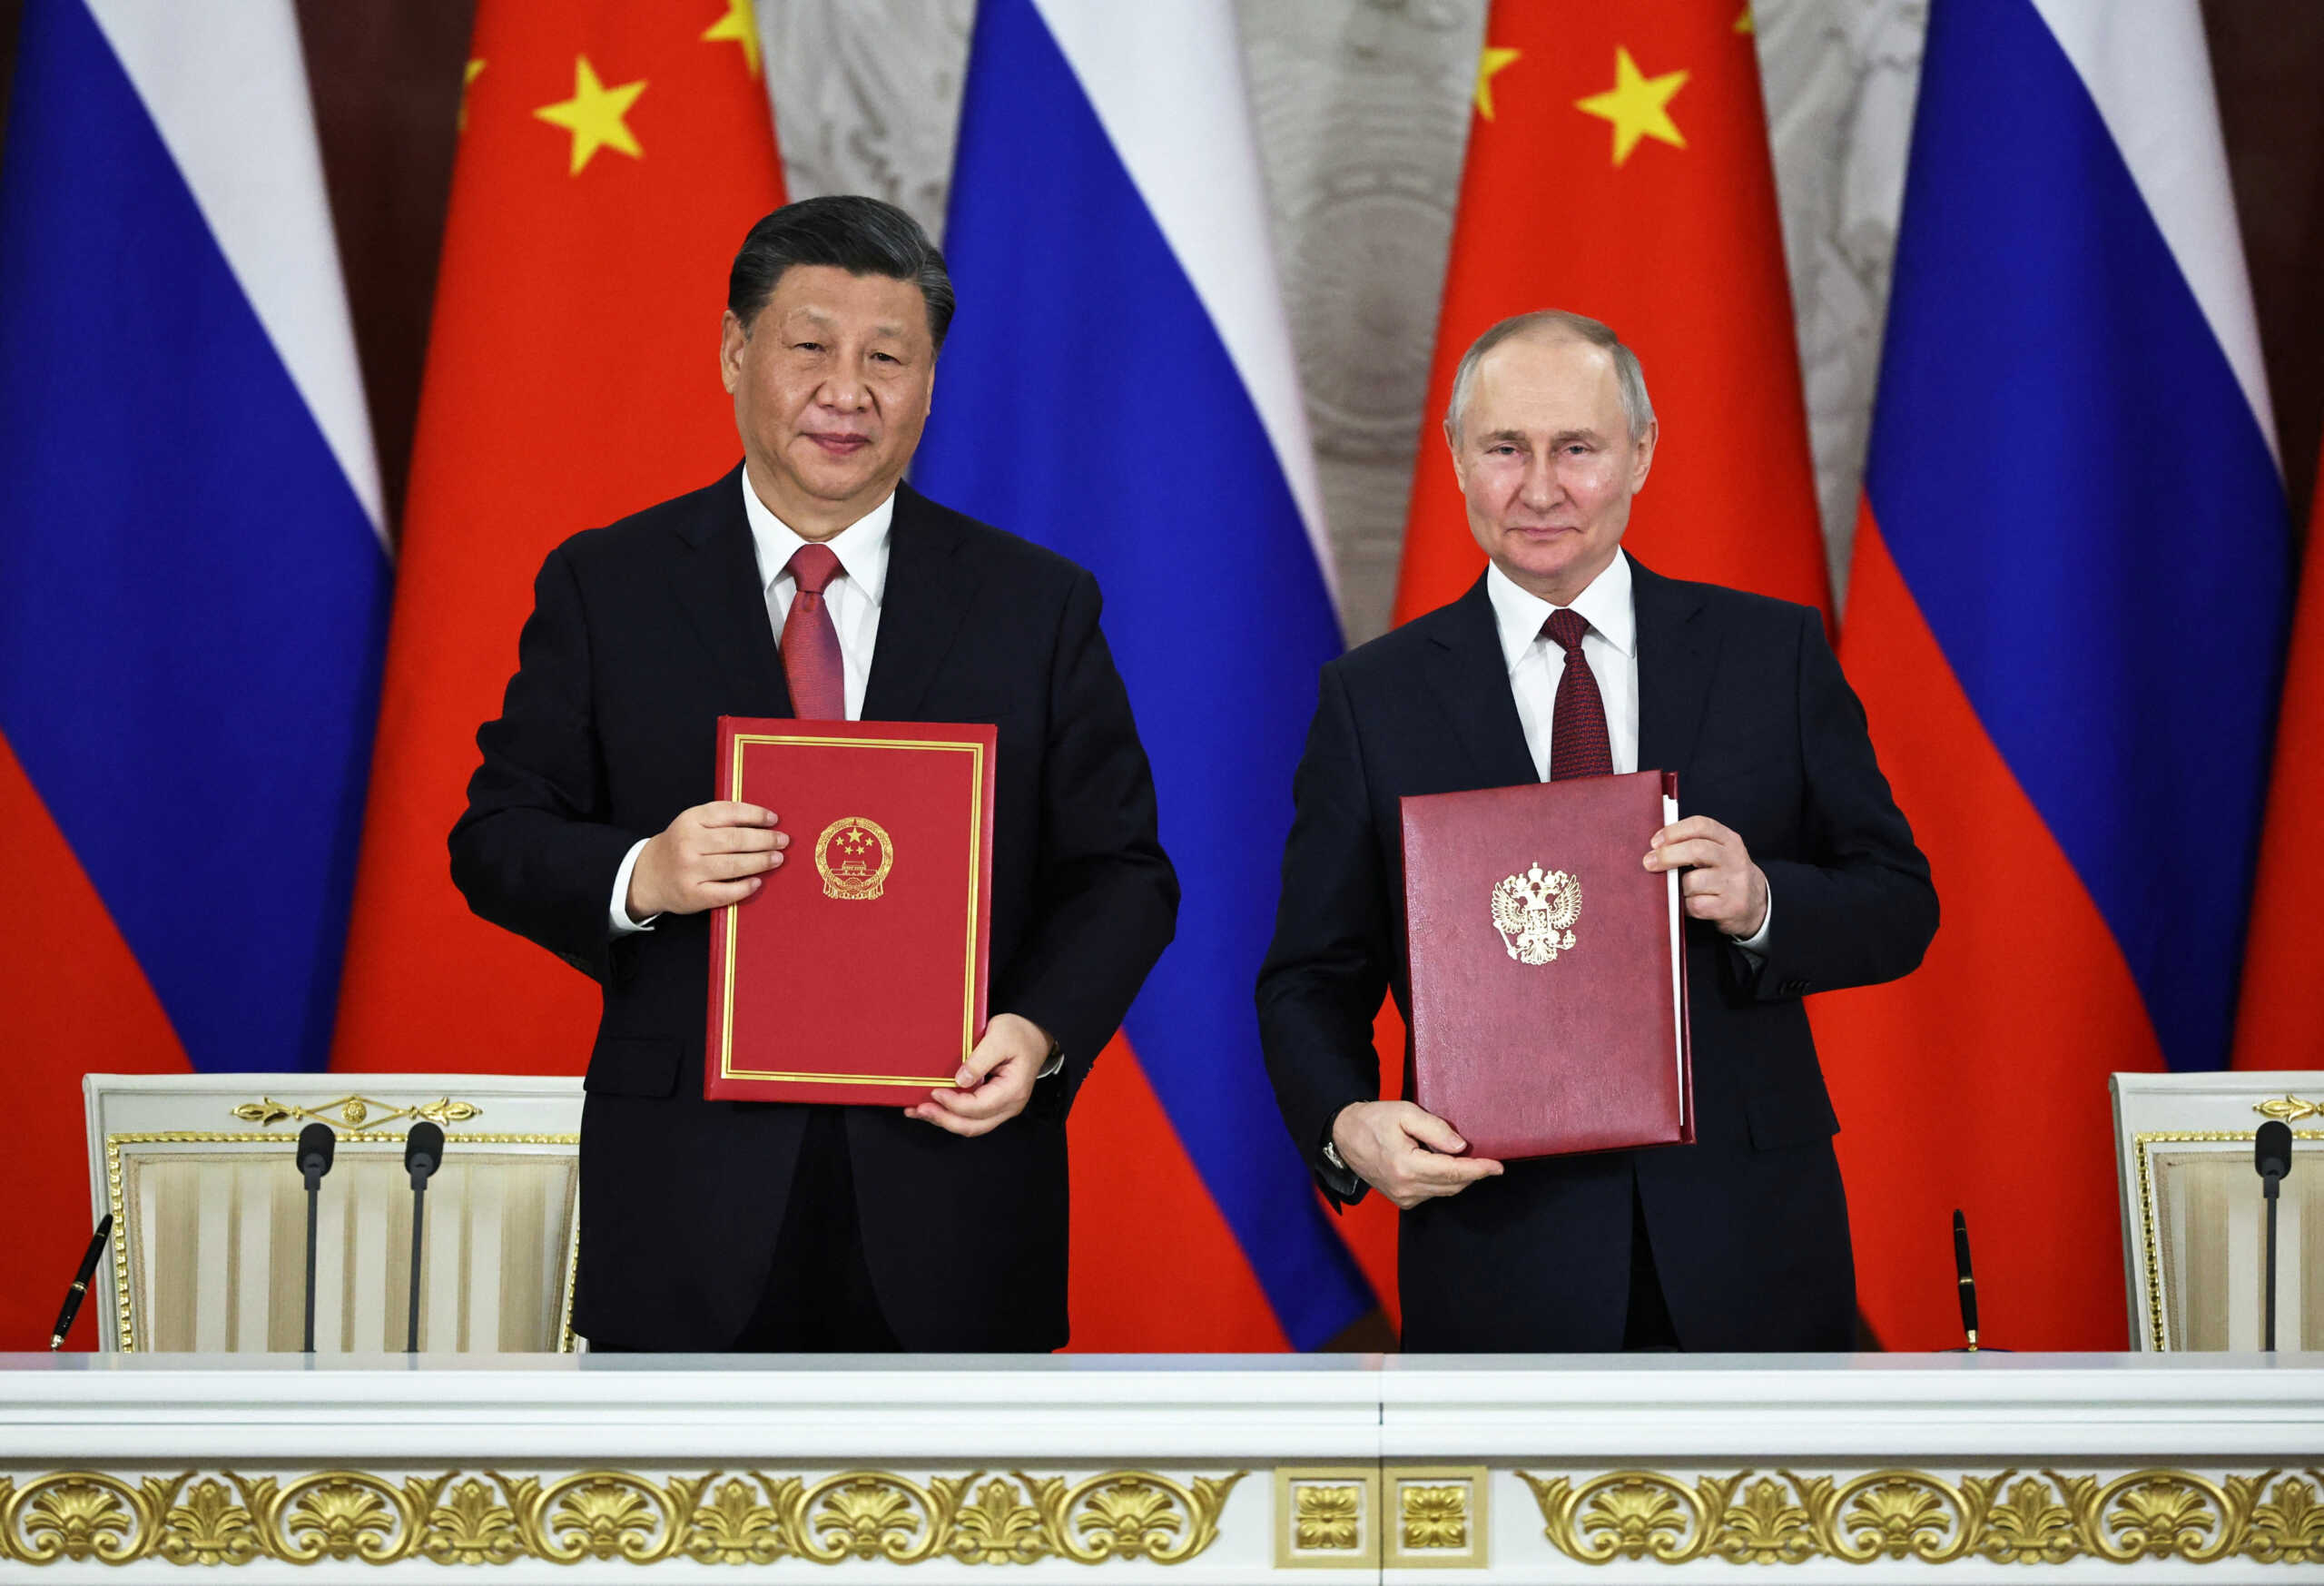 Κίνα – Ρωσία: Ο Σι προειδοποίησε τον Πούτιν να μην κάνει χρήση πυρηνικών στην Ουκρανία, λένε οι FT